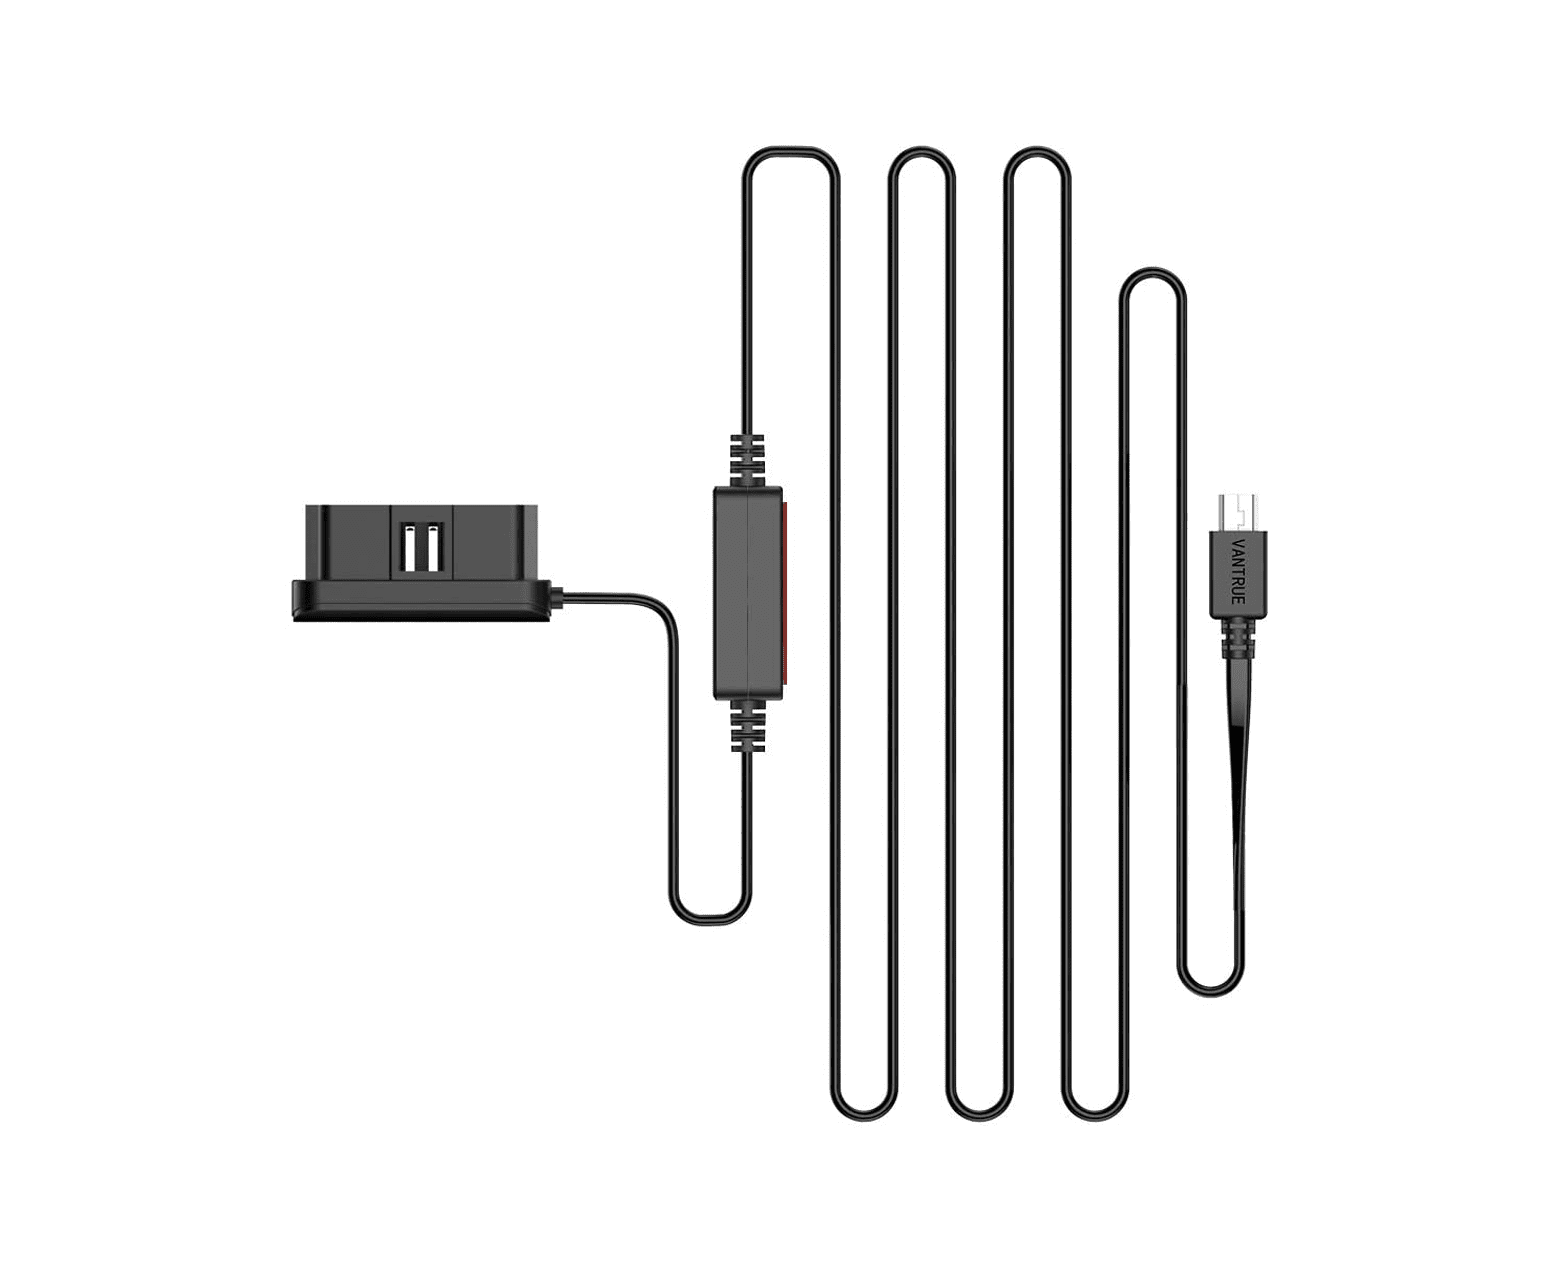 Vantrue OBD kablosu (güç kablosu)